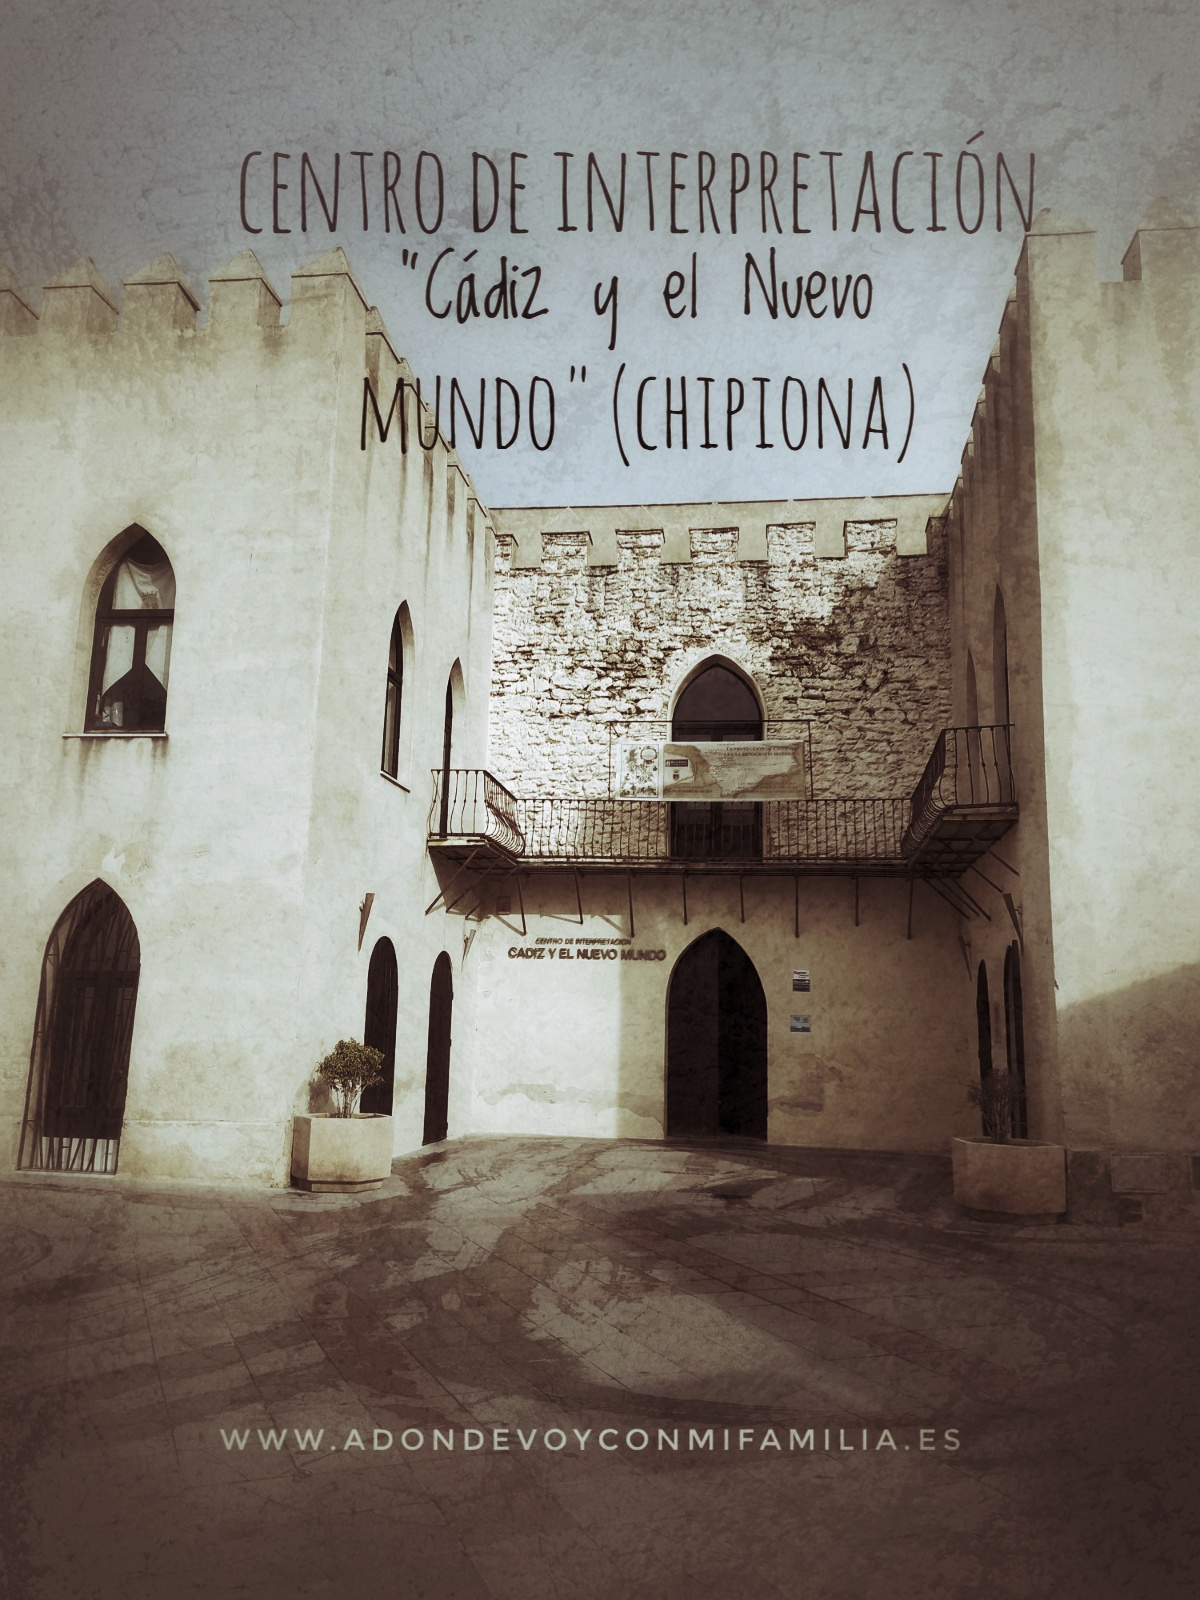 Centro de Interpretación "Cádiz y el Nuevo Mundo" (Chipiona)